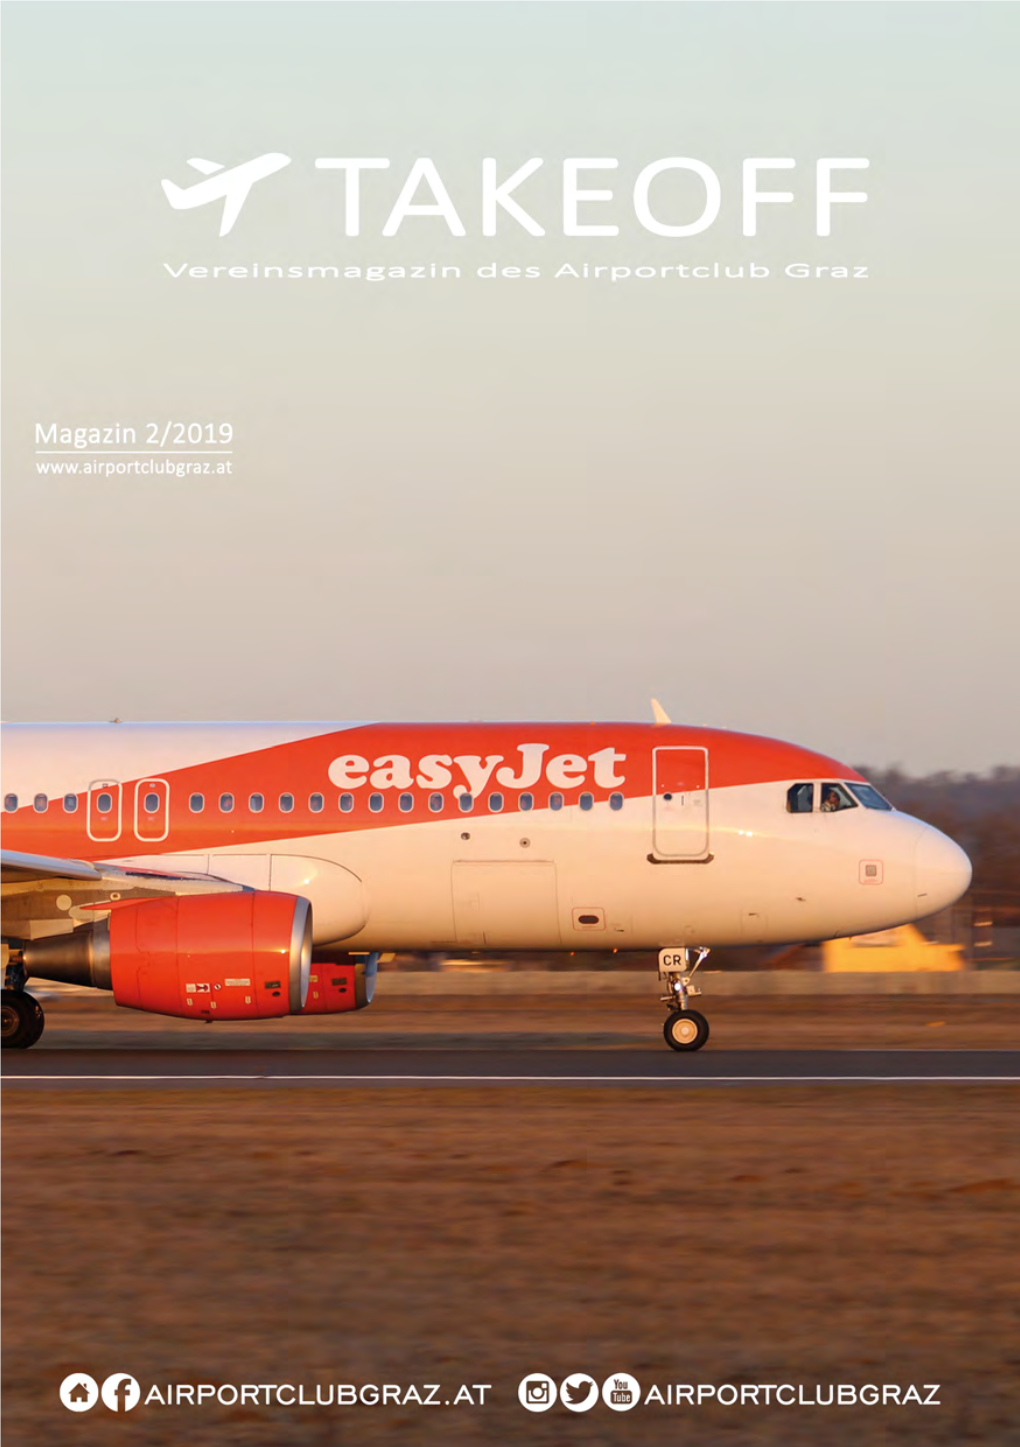 Airportclub-Graz-Magazin-Takeoff